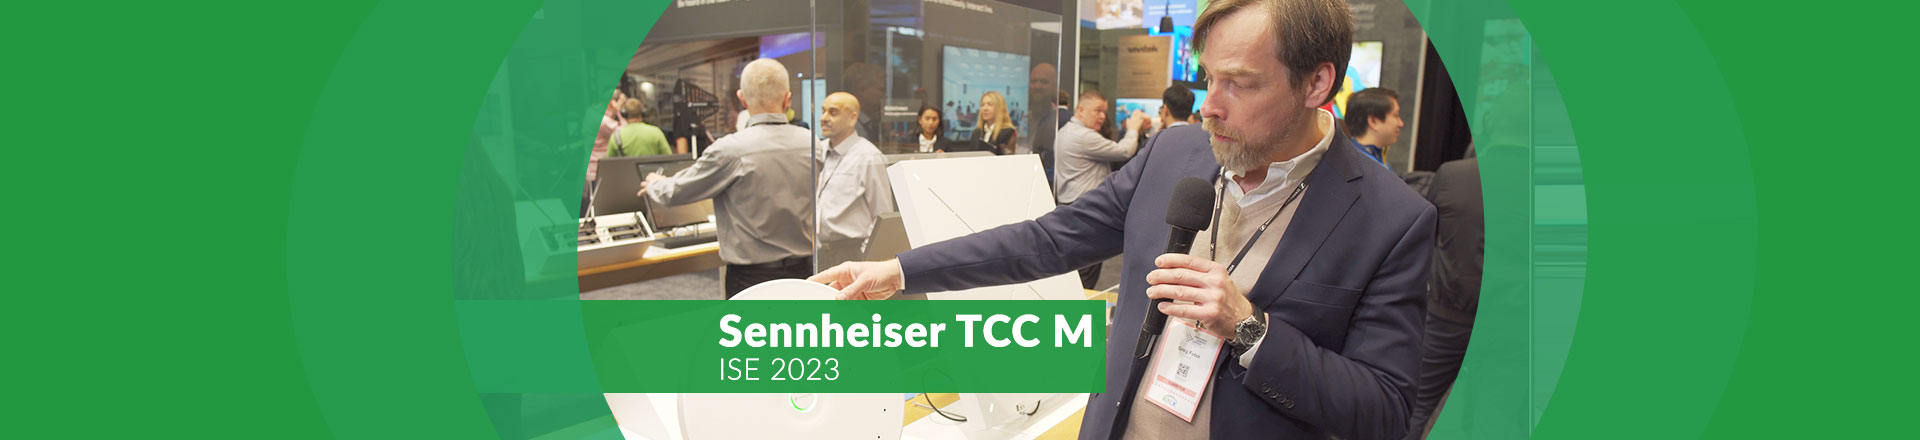 Sennheiser TCC M: Nowy mikrofon sufitowy do konferencji